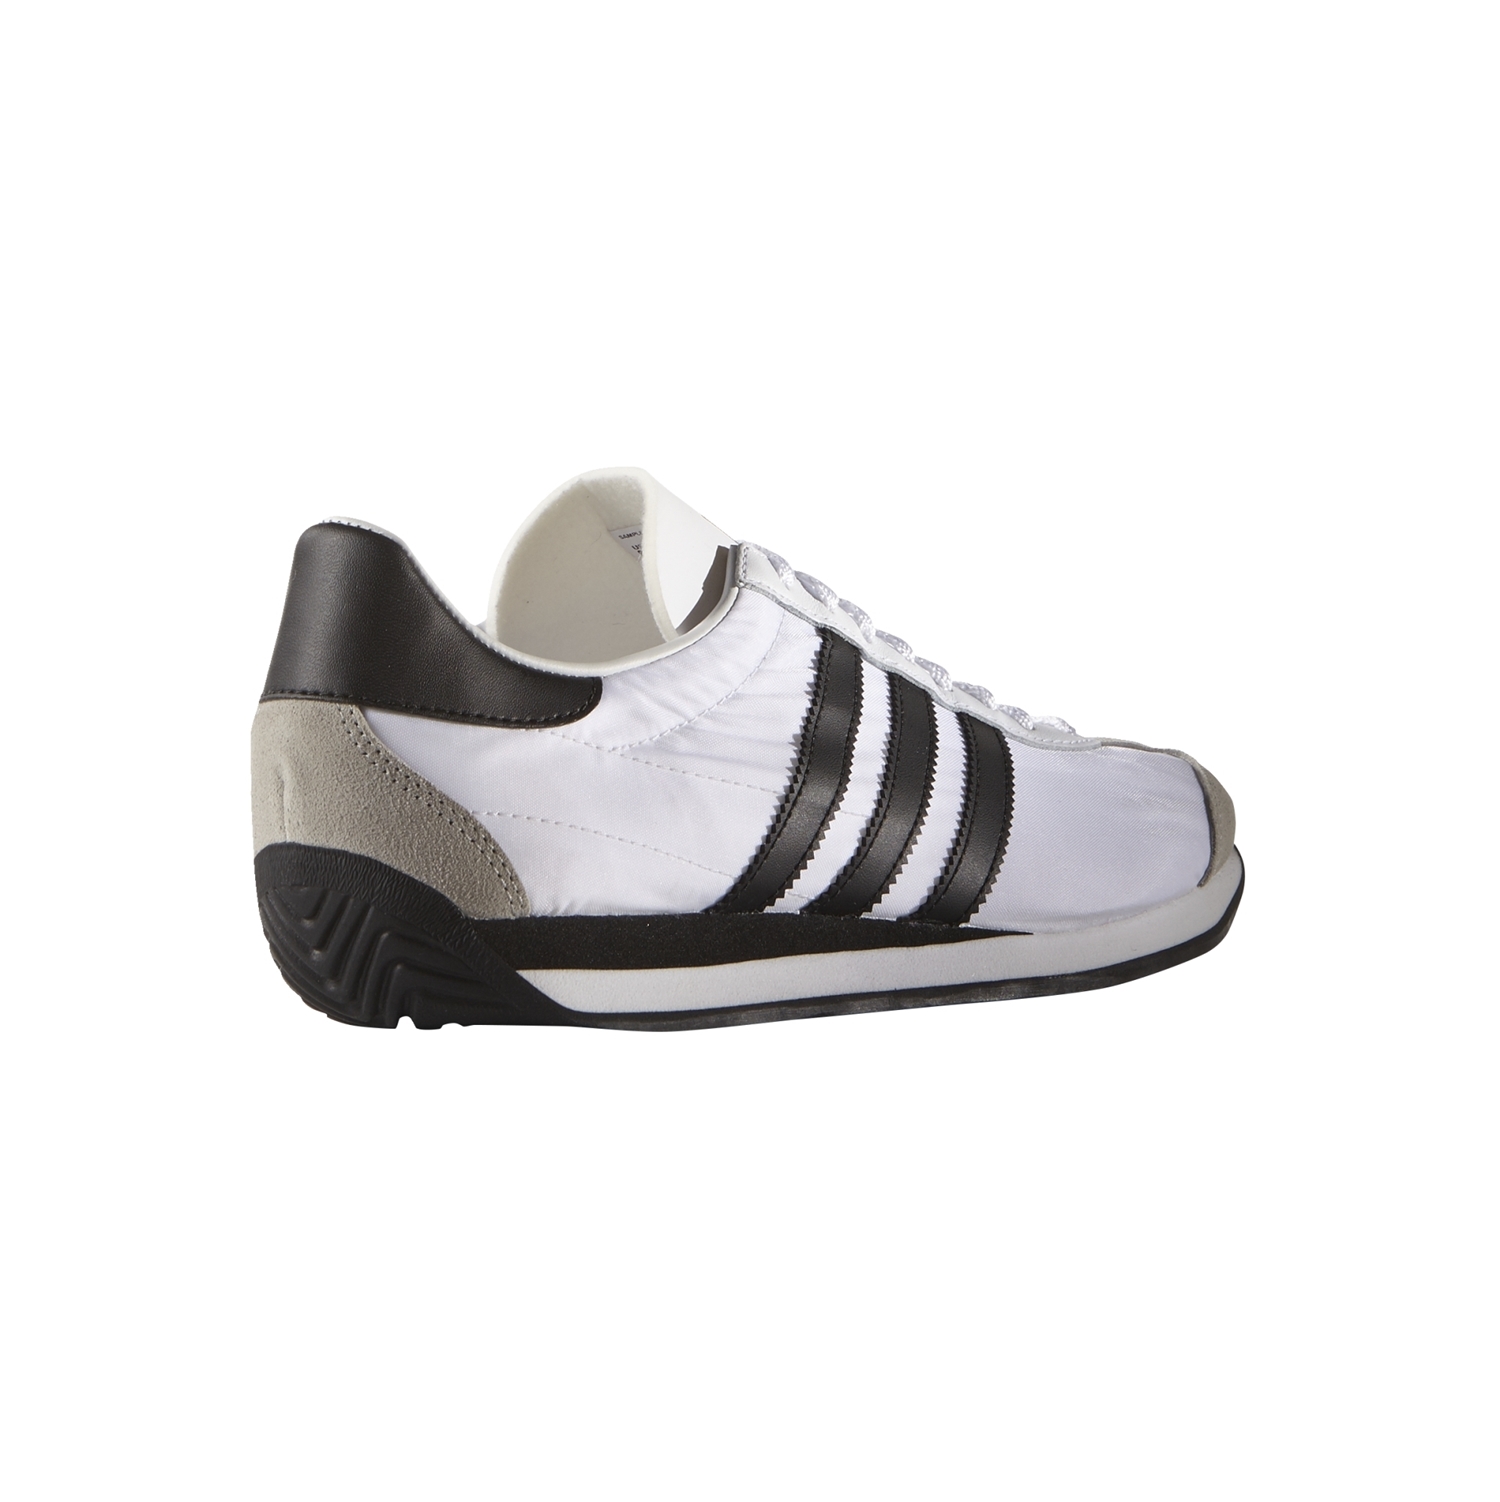 Adidas OG "Racer (white/black)